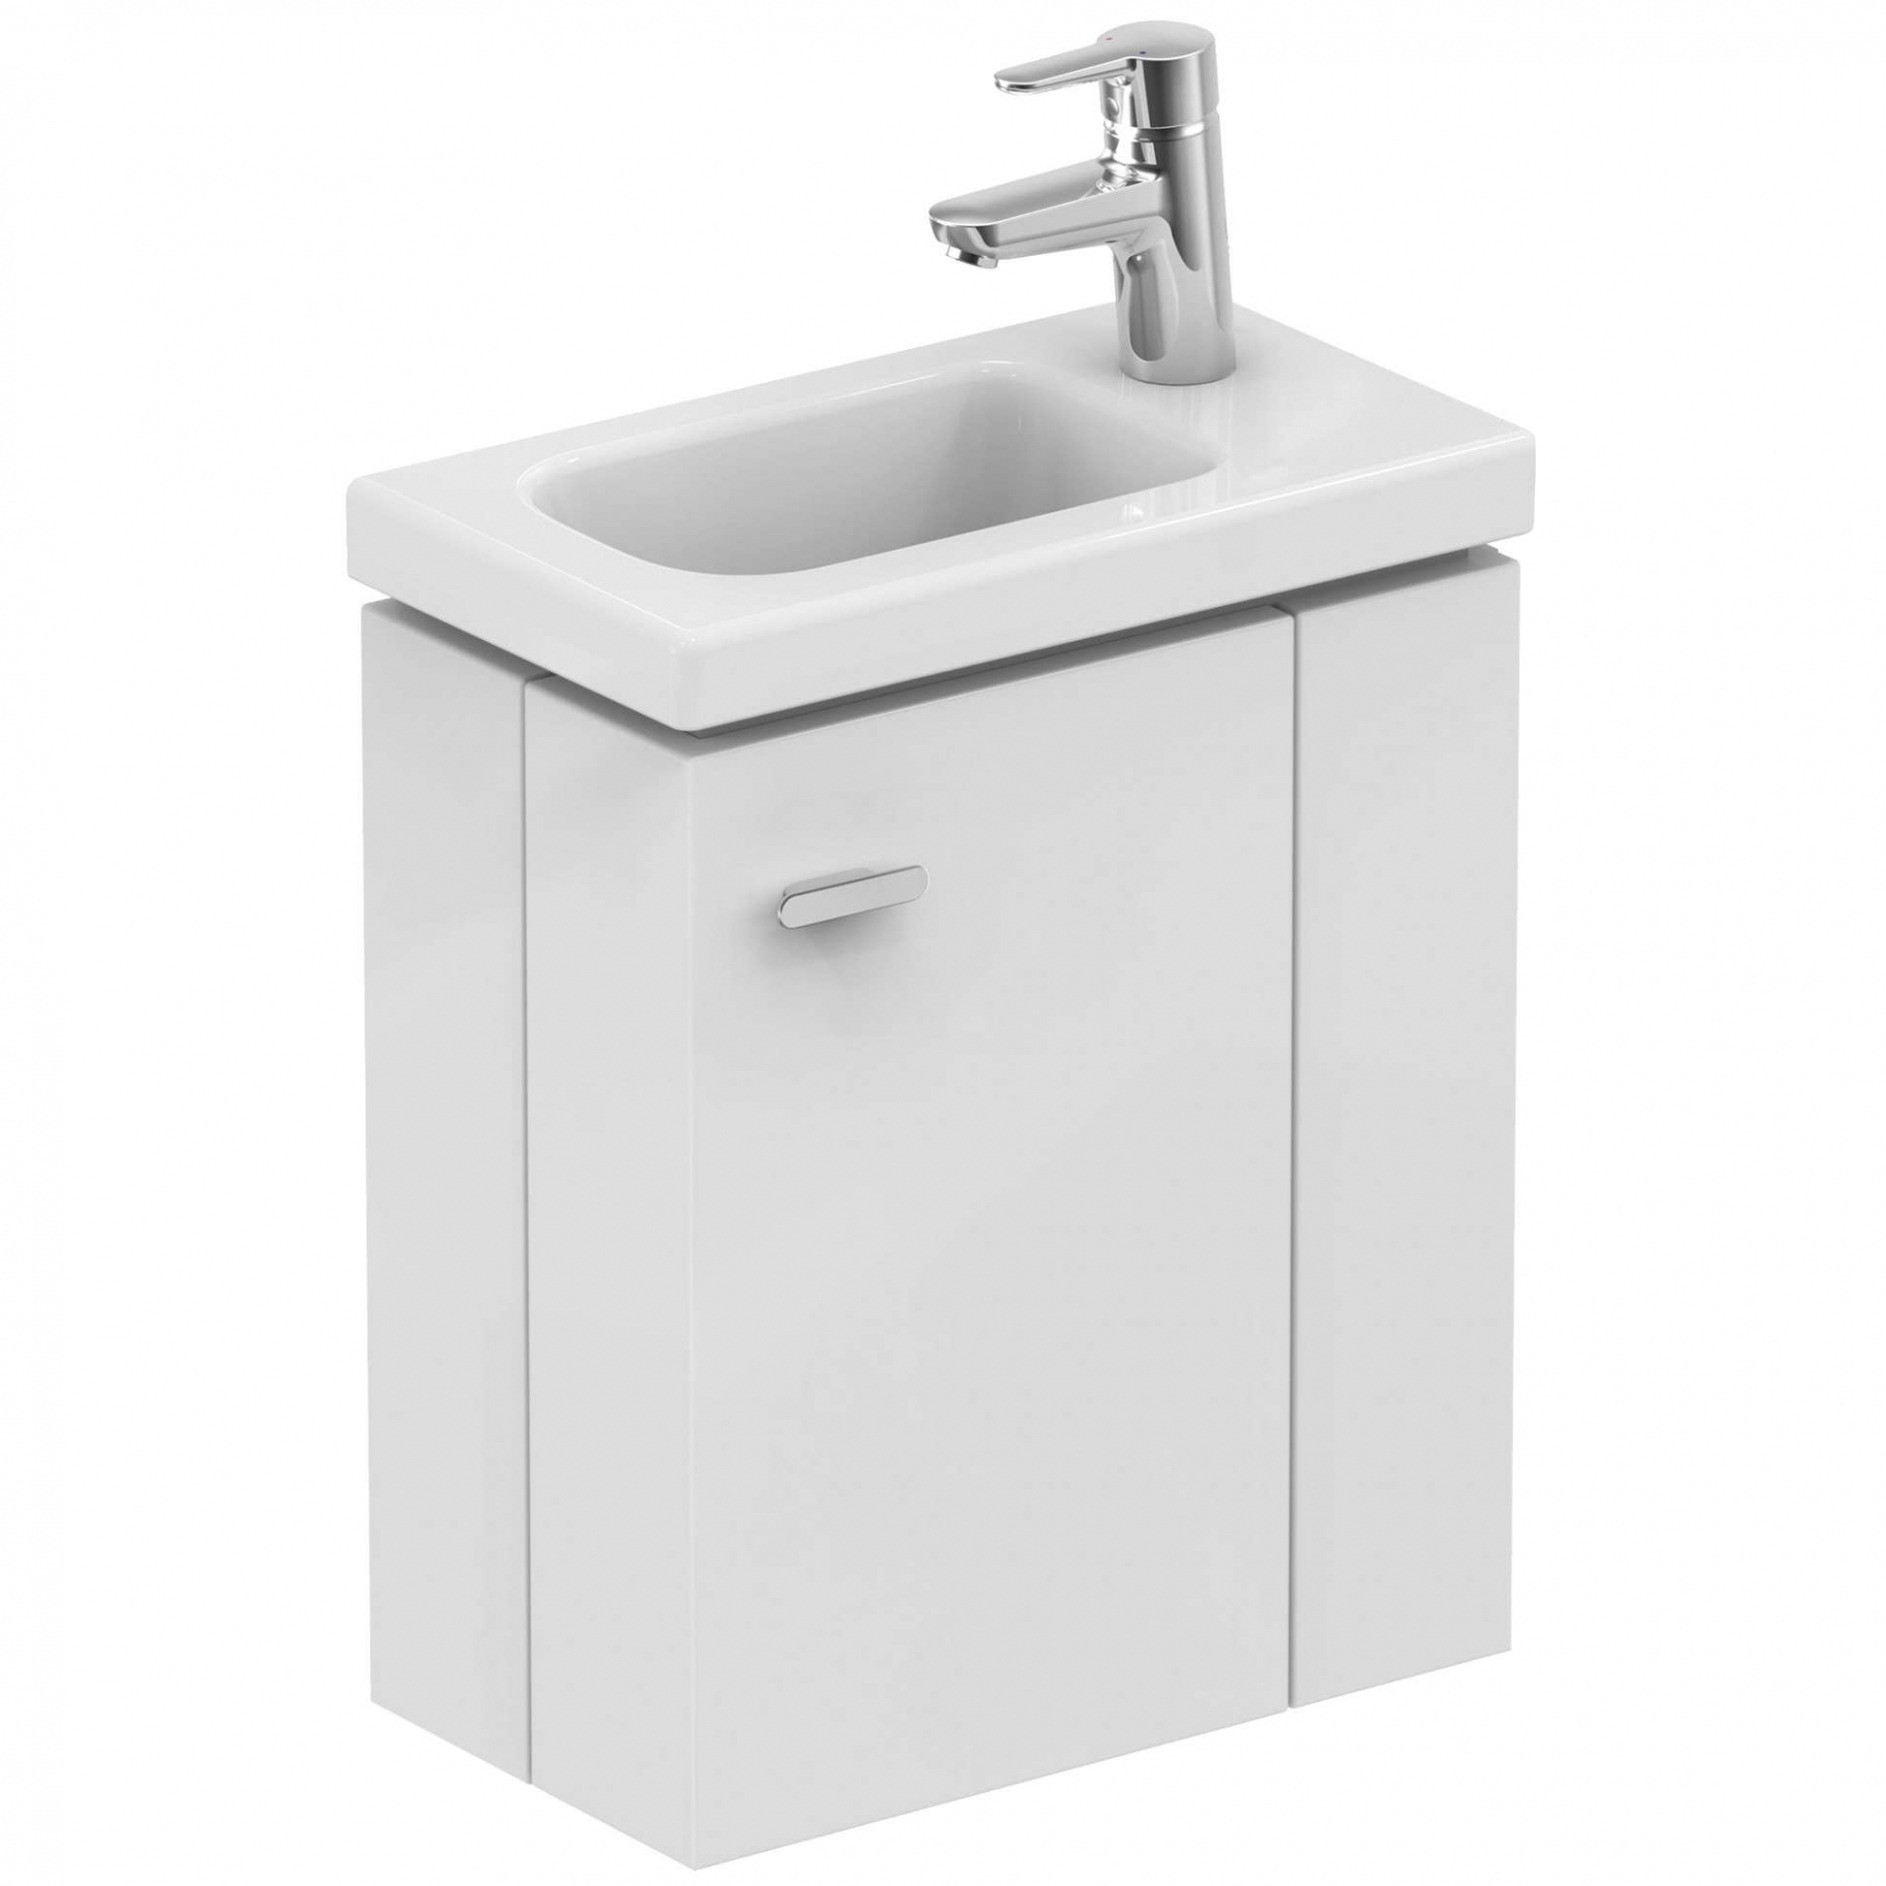 Waschbeckenunterschrank Für Aufsatzwaschbecken
 Waschbeckenunterschrank Für Aufsatzwaschbecken Schön